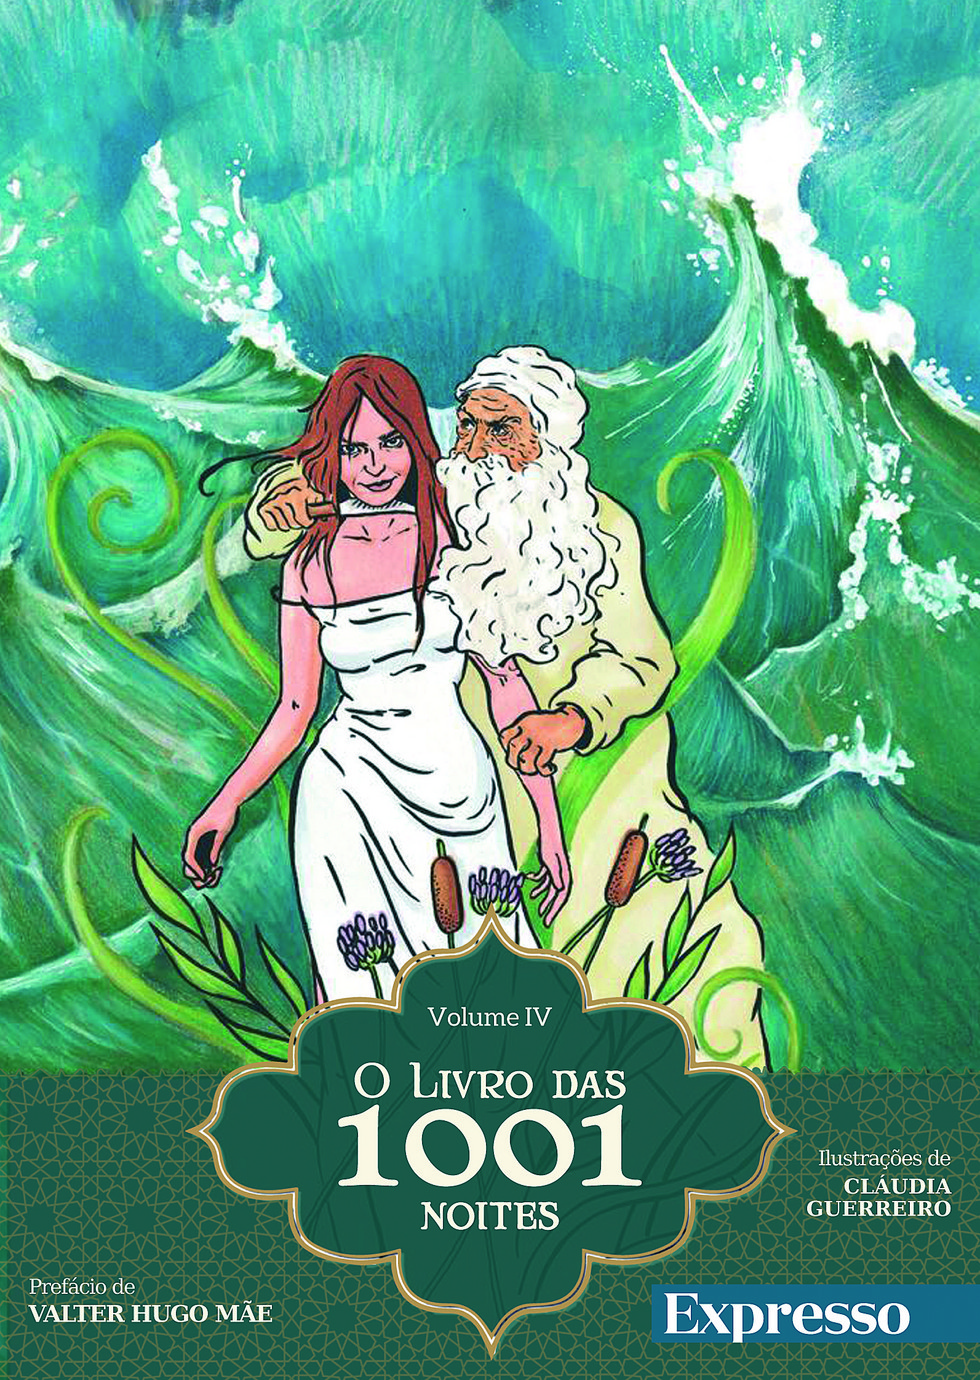 VIRTUAL ILLUSION: As 1001 histórias